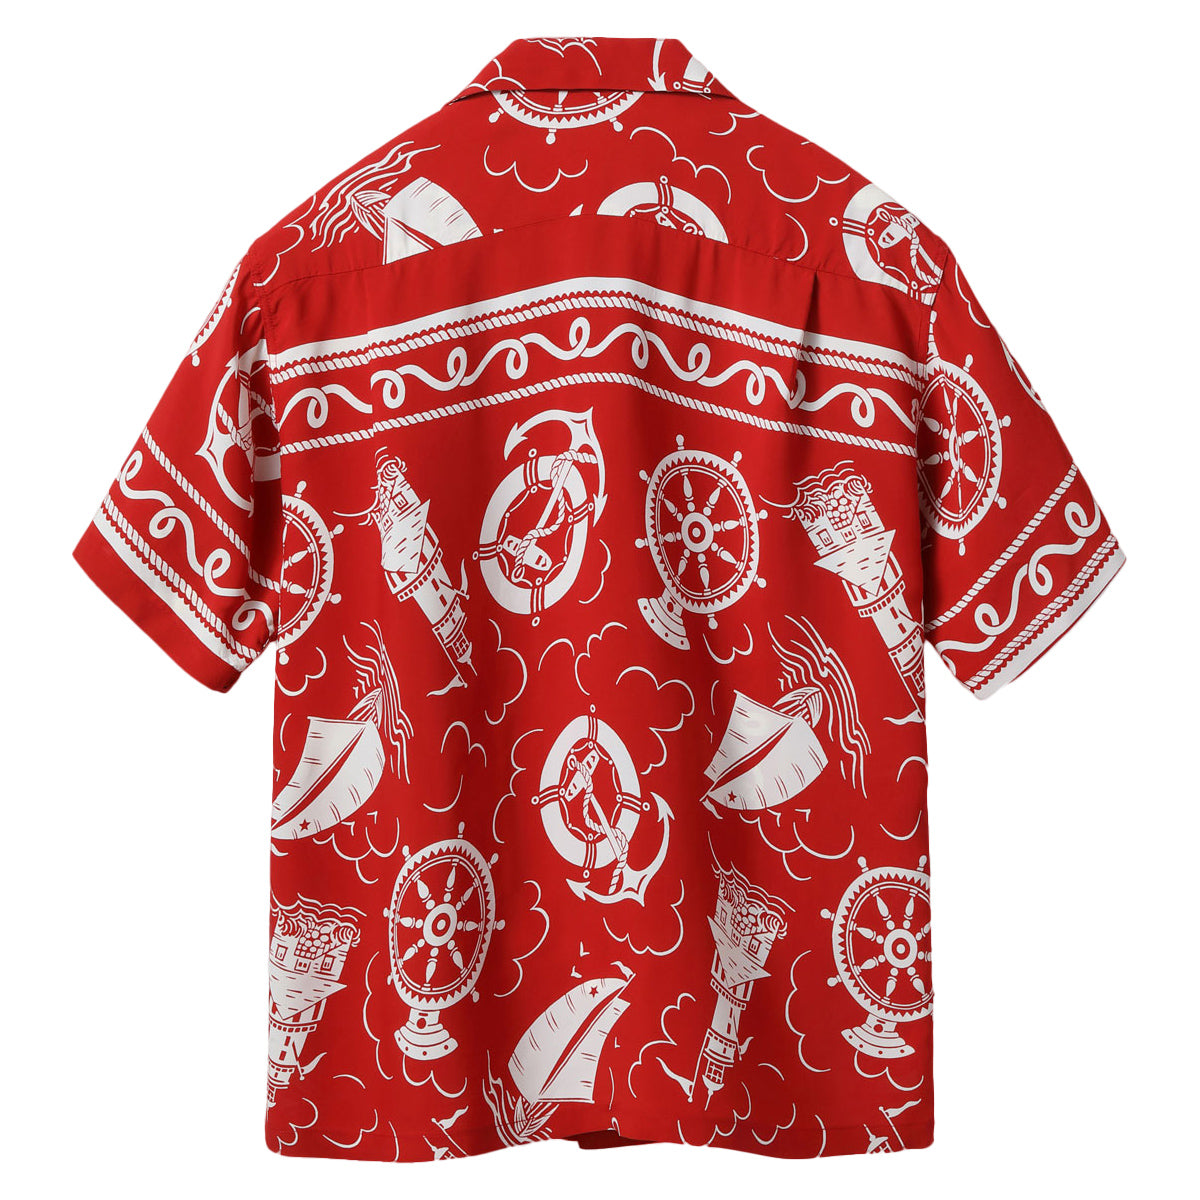 SUN SURF Hawaiian Shirt Aloha Shirt Rayon ALL ABOARD Short Sleeve SS39230 Red Made in Japan